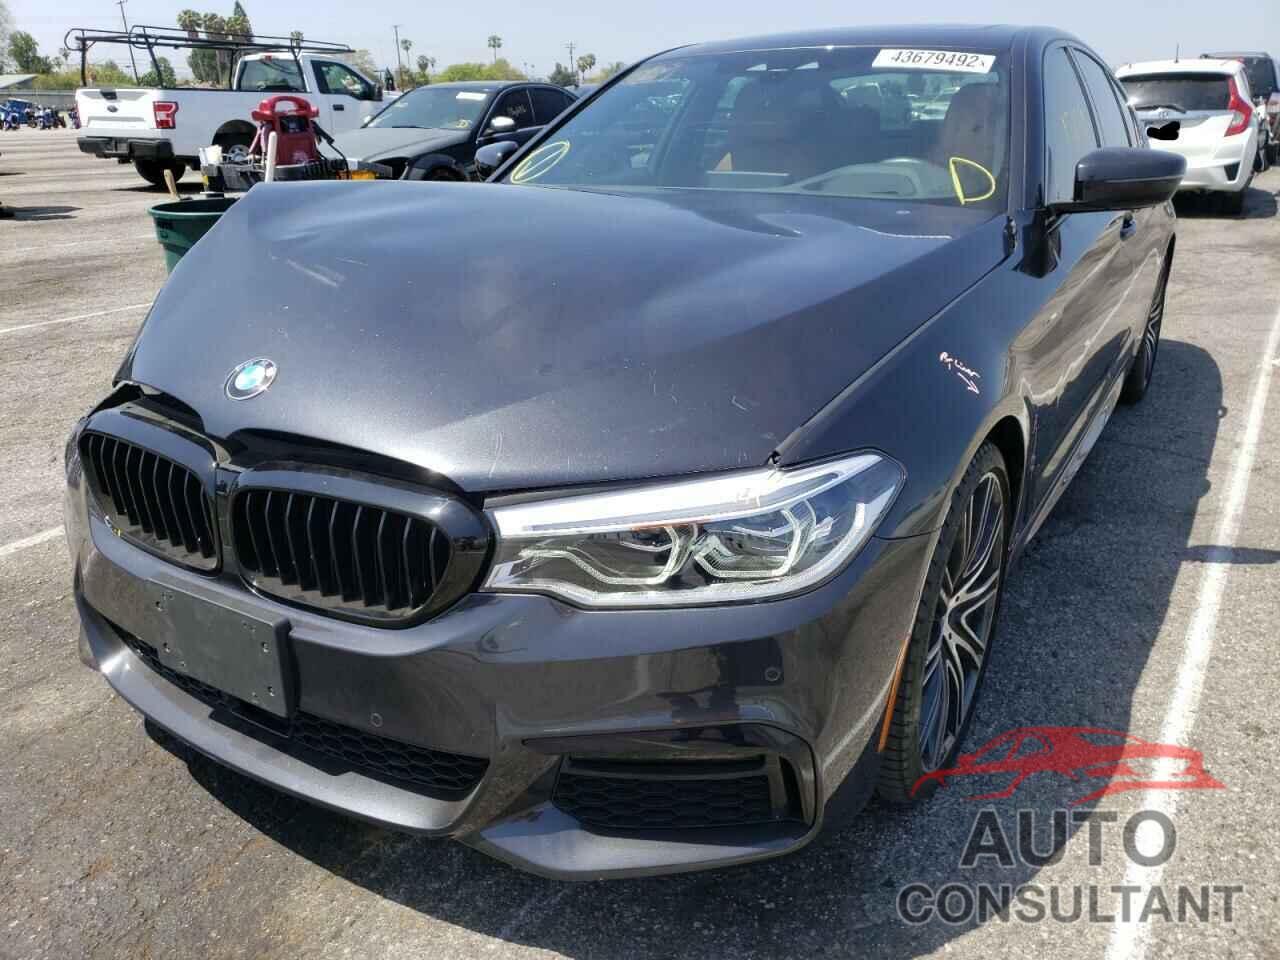 BMW 5 SERIES 2019 - WBAJE5C50KWW11802